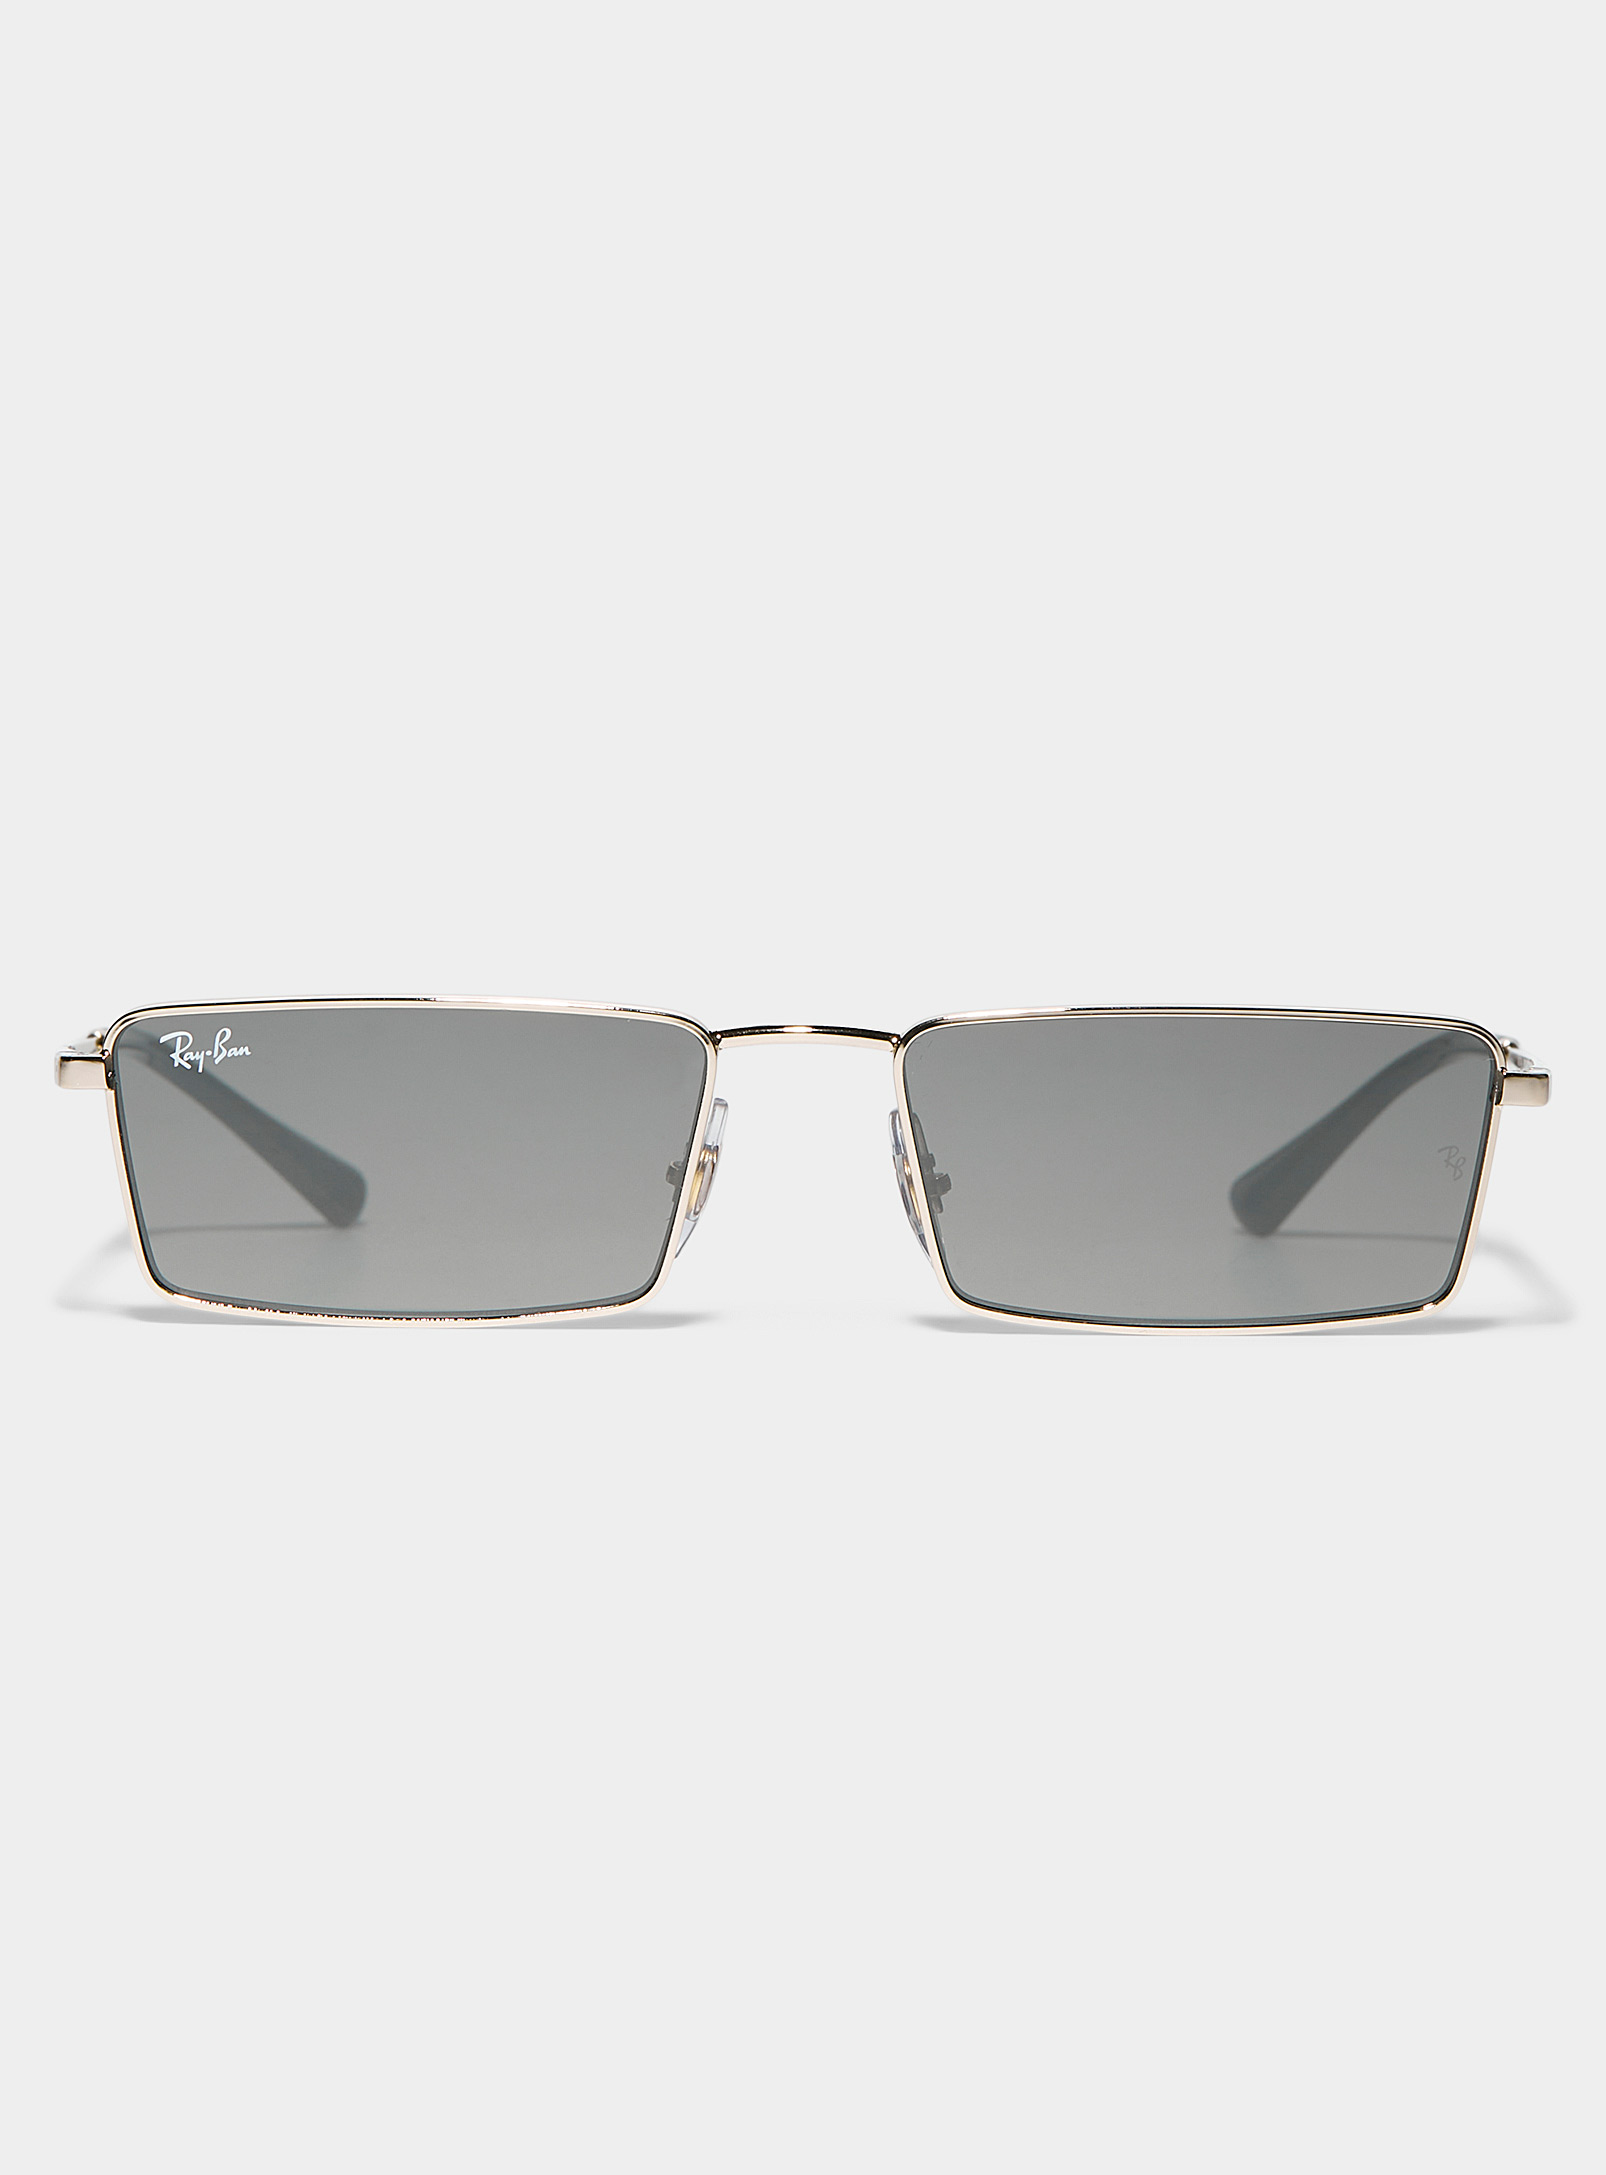 Ray-Ban - Les lunettes de soleil rectangulaires rétro